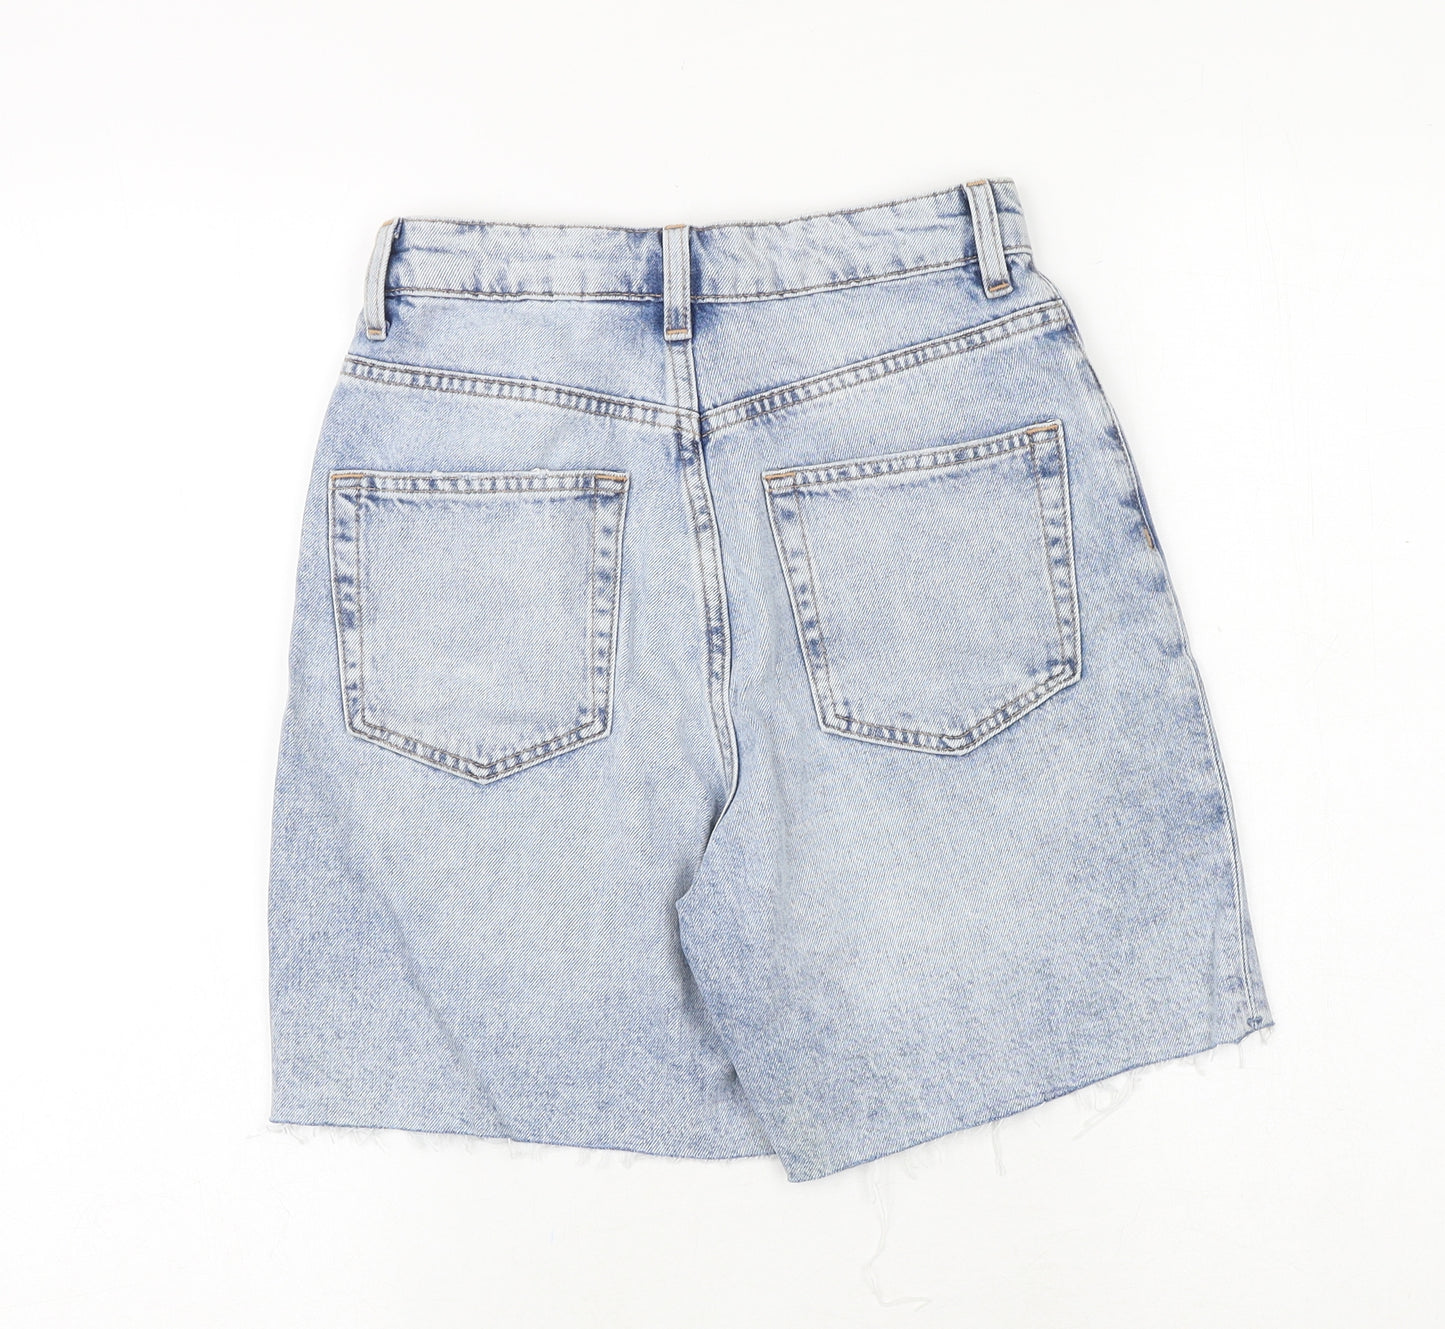 H&M Womens Blue 100% Cotton Cut-Off Shorts Size 6 Regular Zip